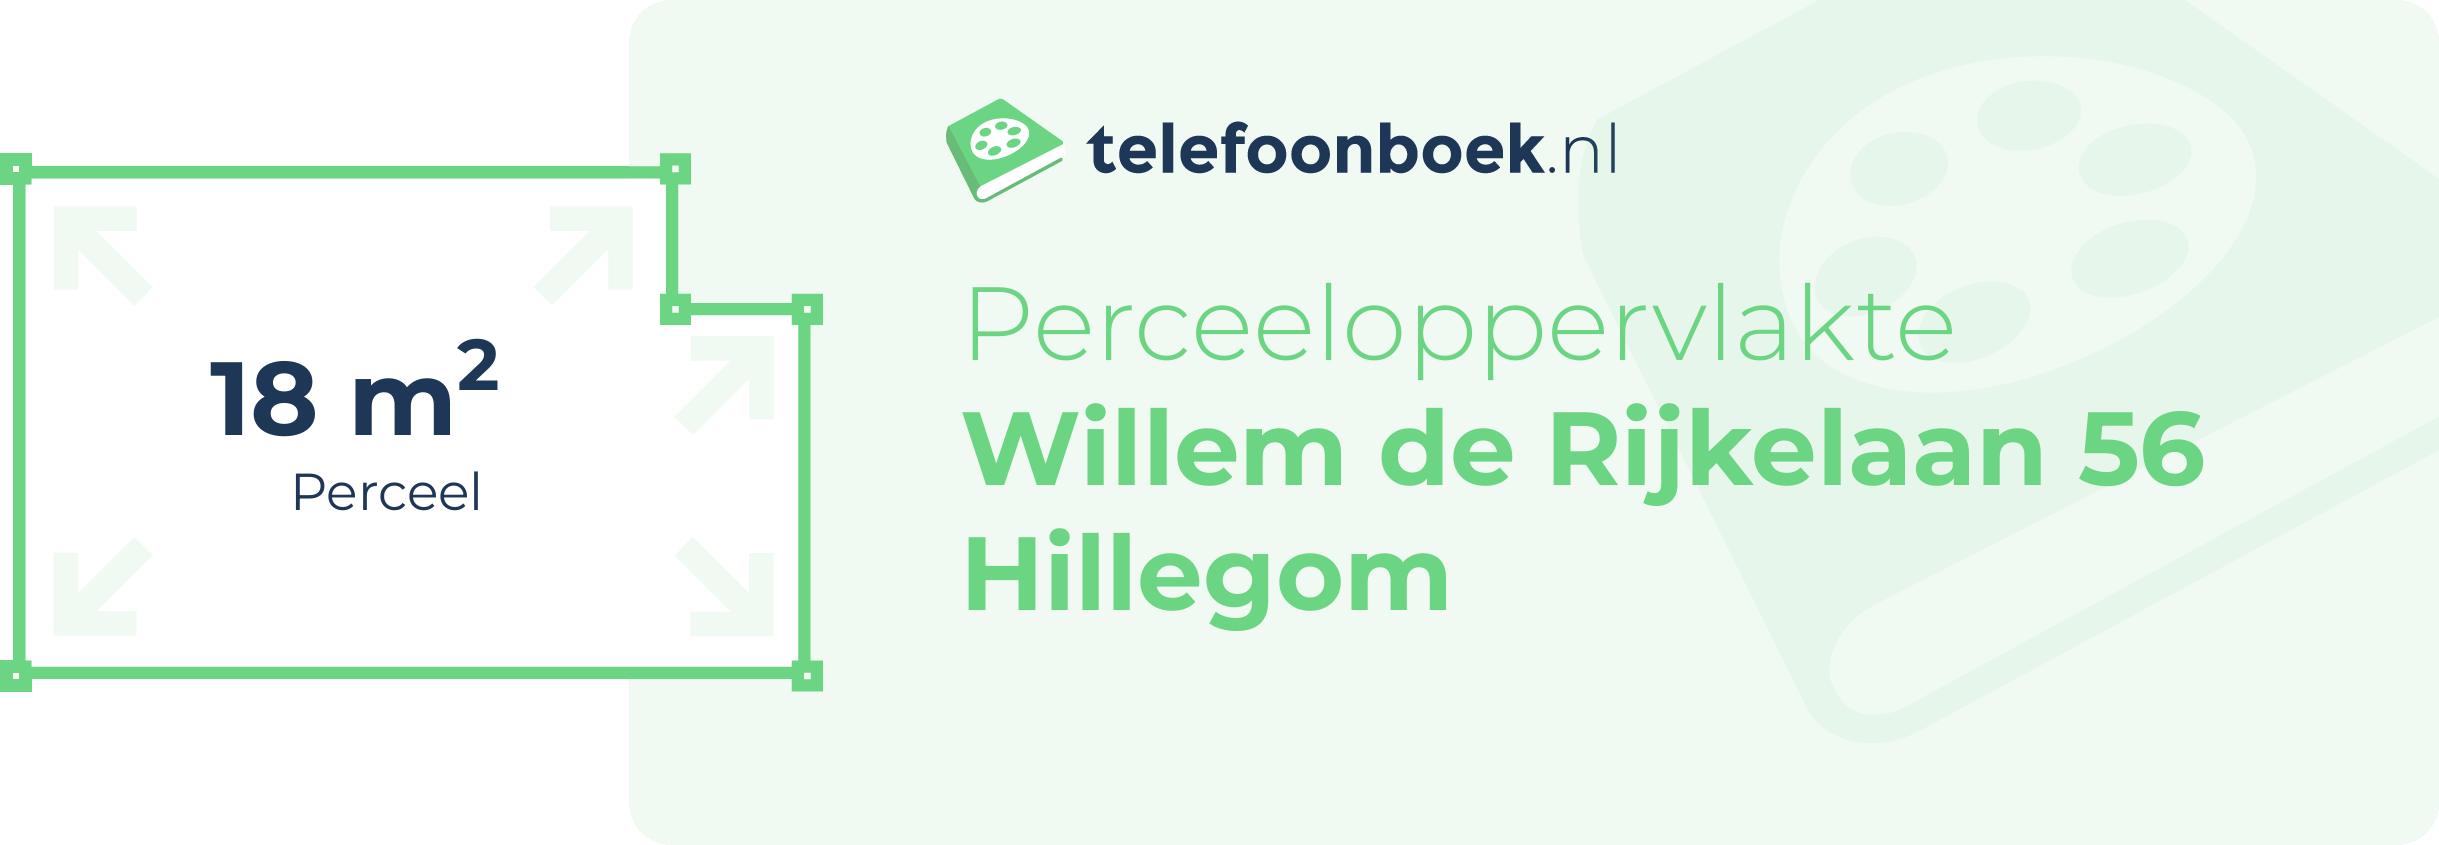 Perceeloppervlakte Willem De Rijkelaan 56 Hillegom